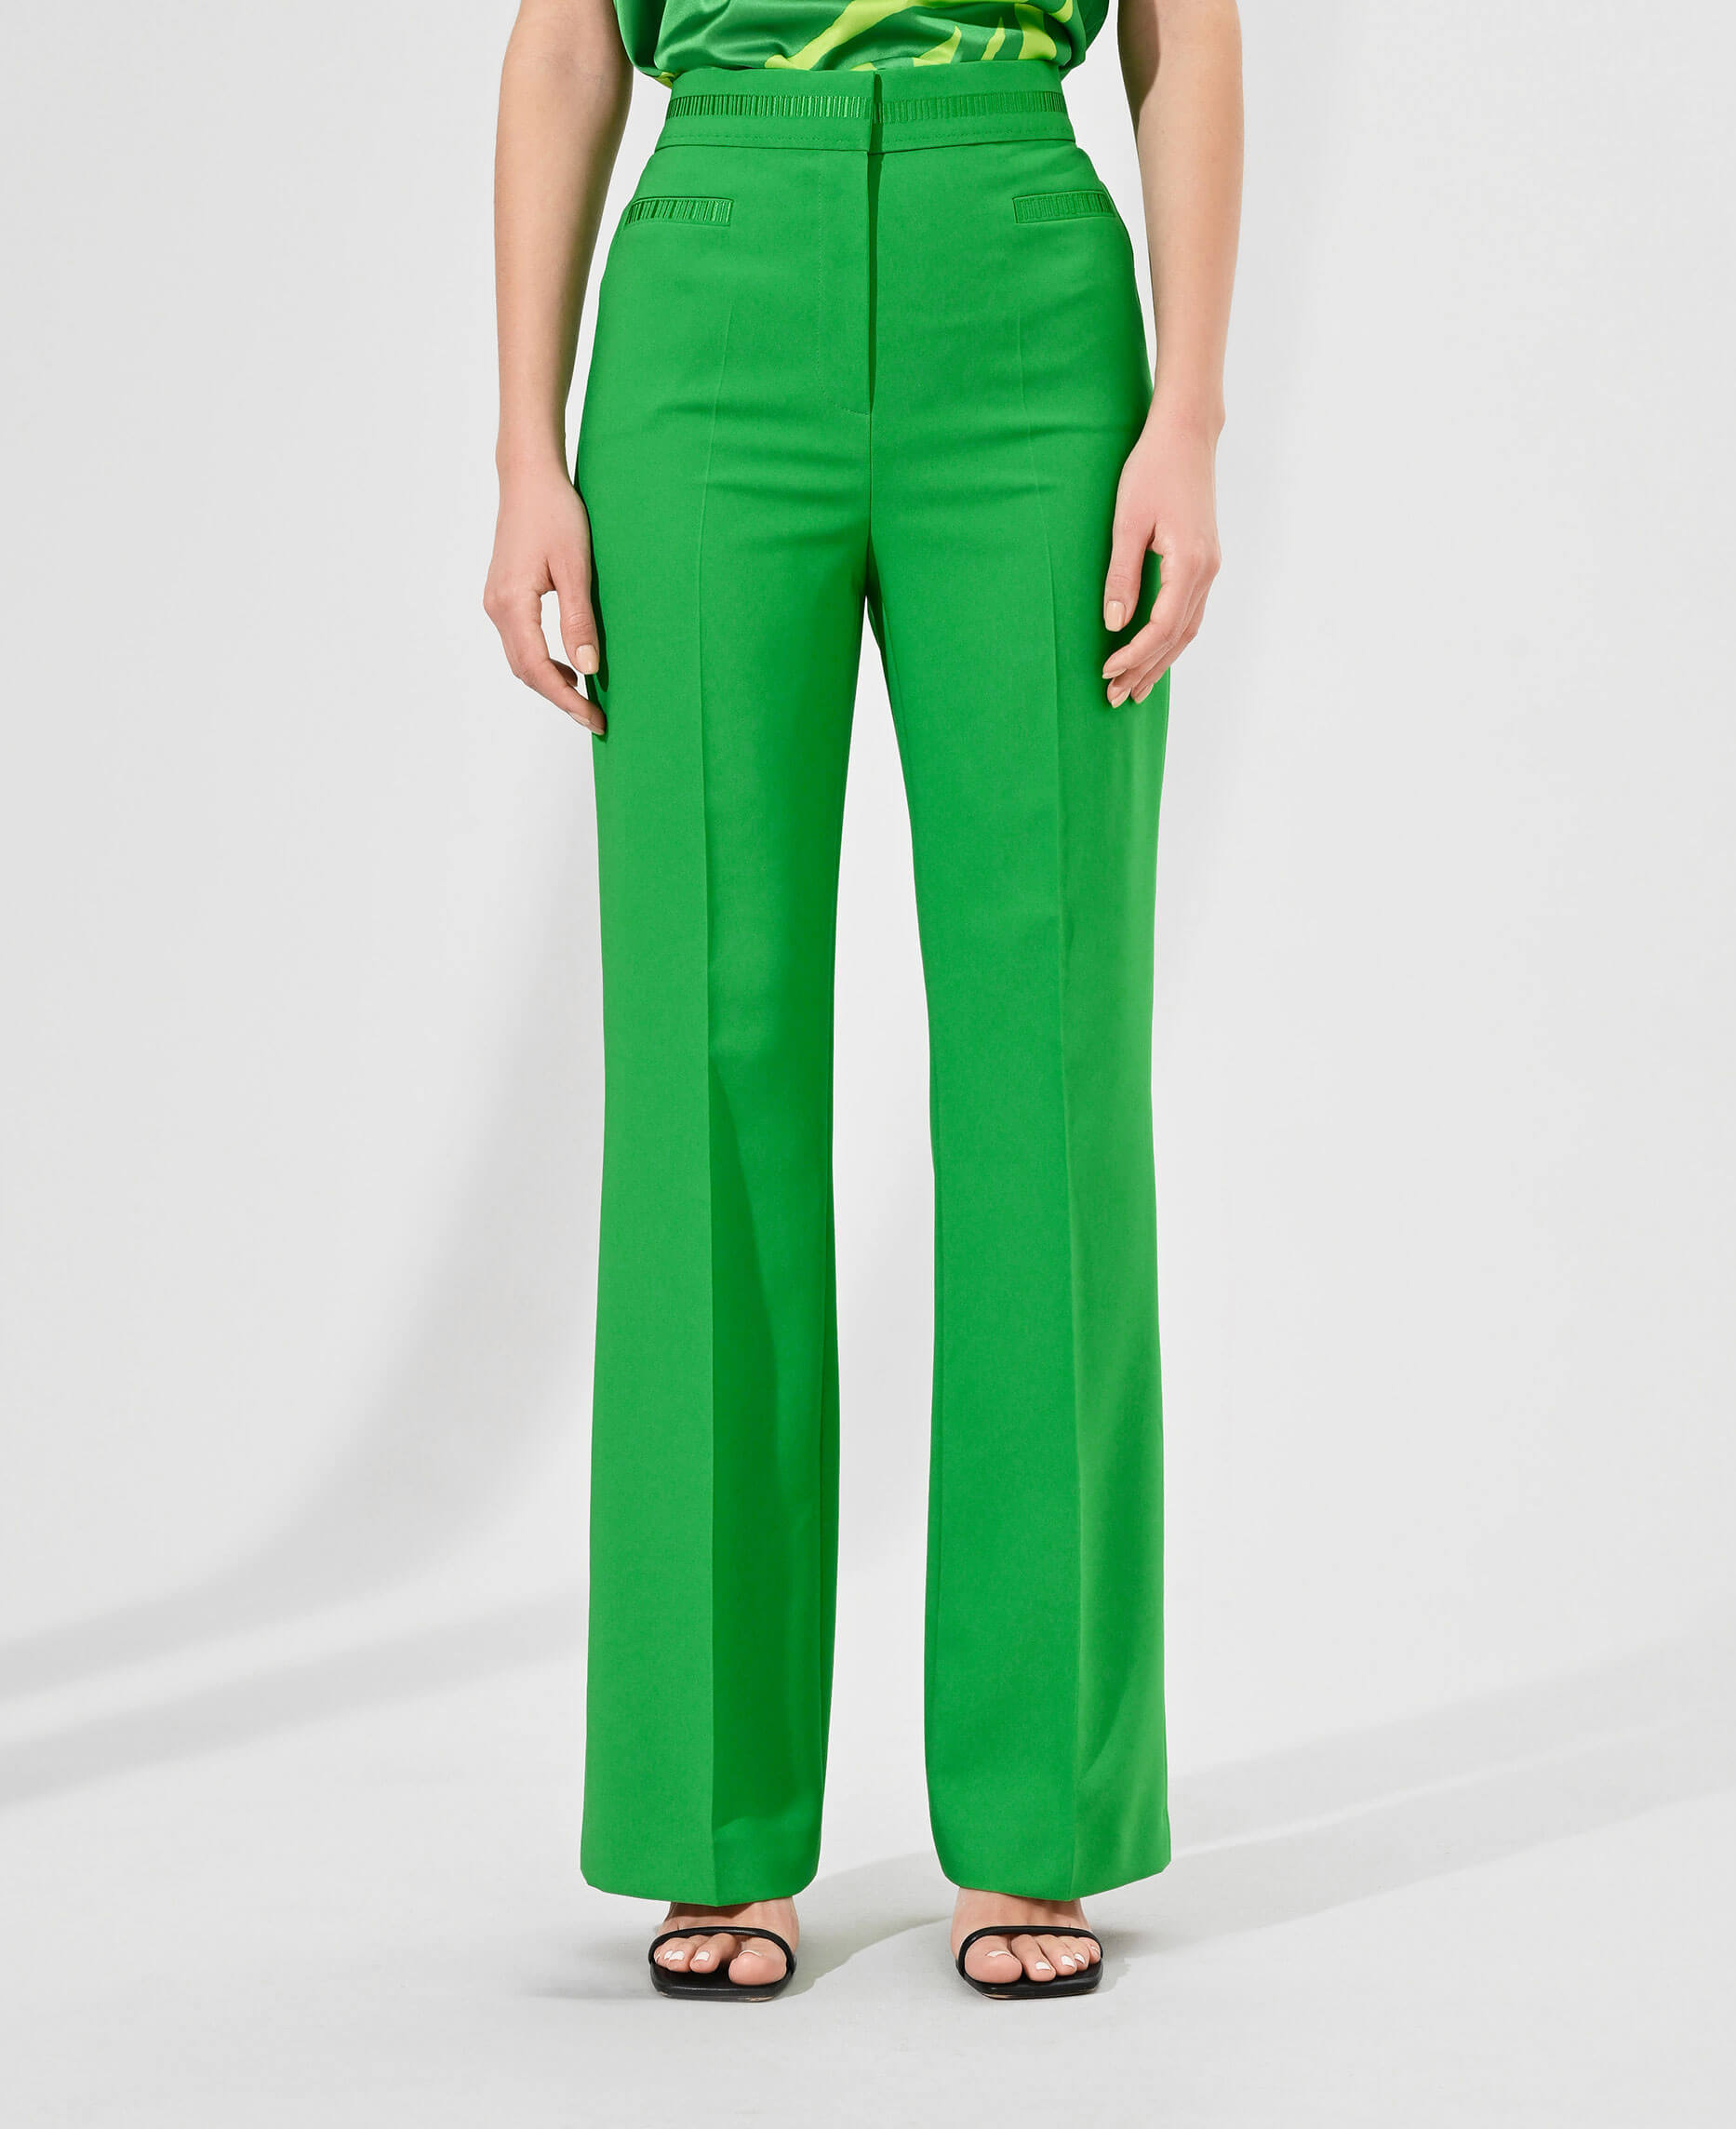 Классические брюки с высокой посадкой Цвет Зеленый